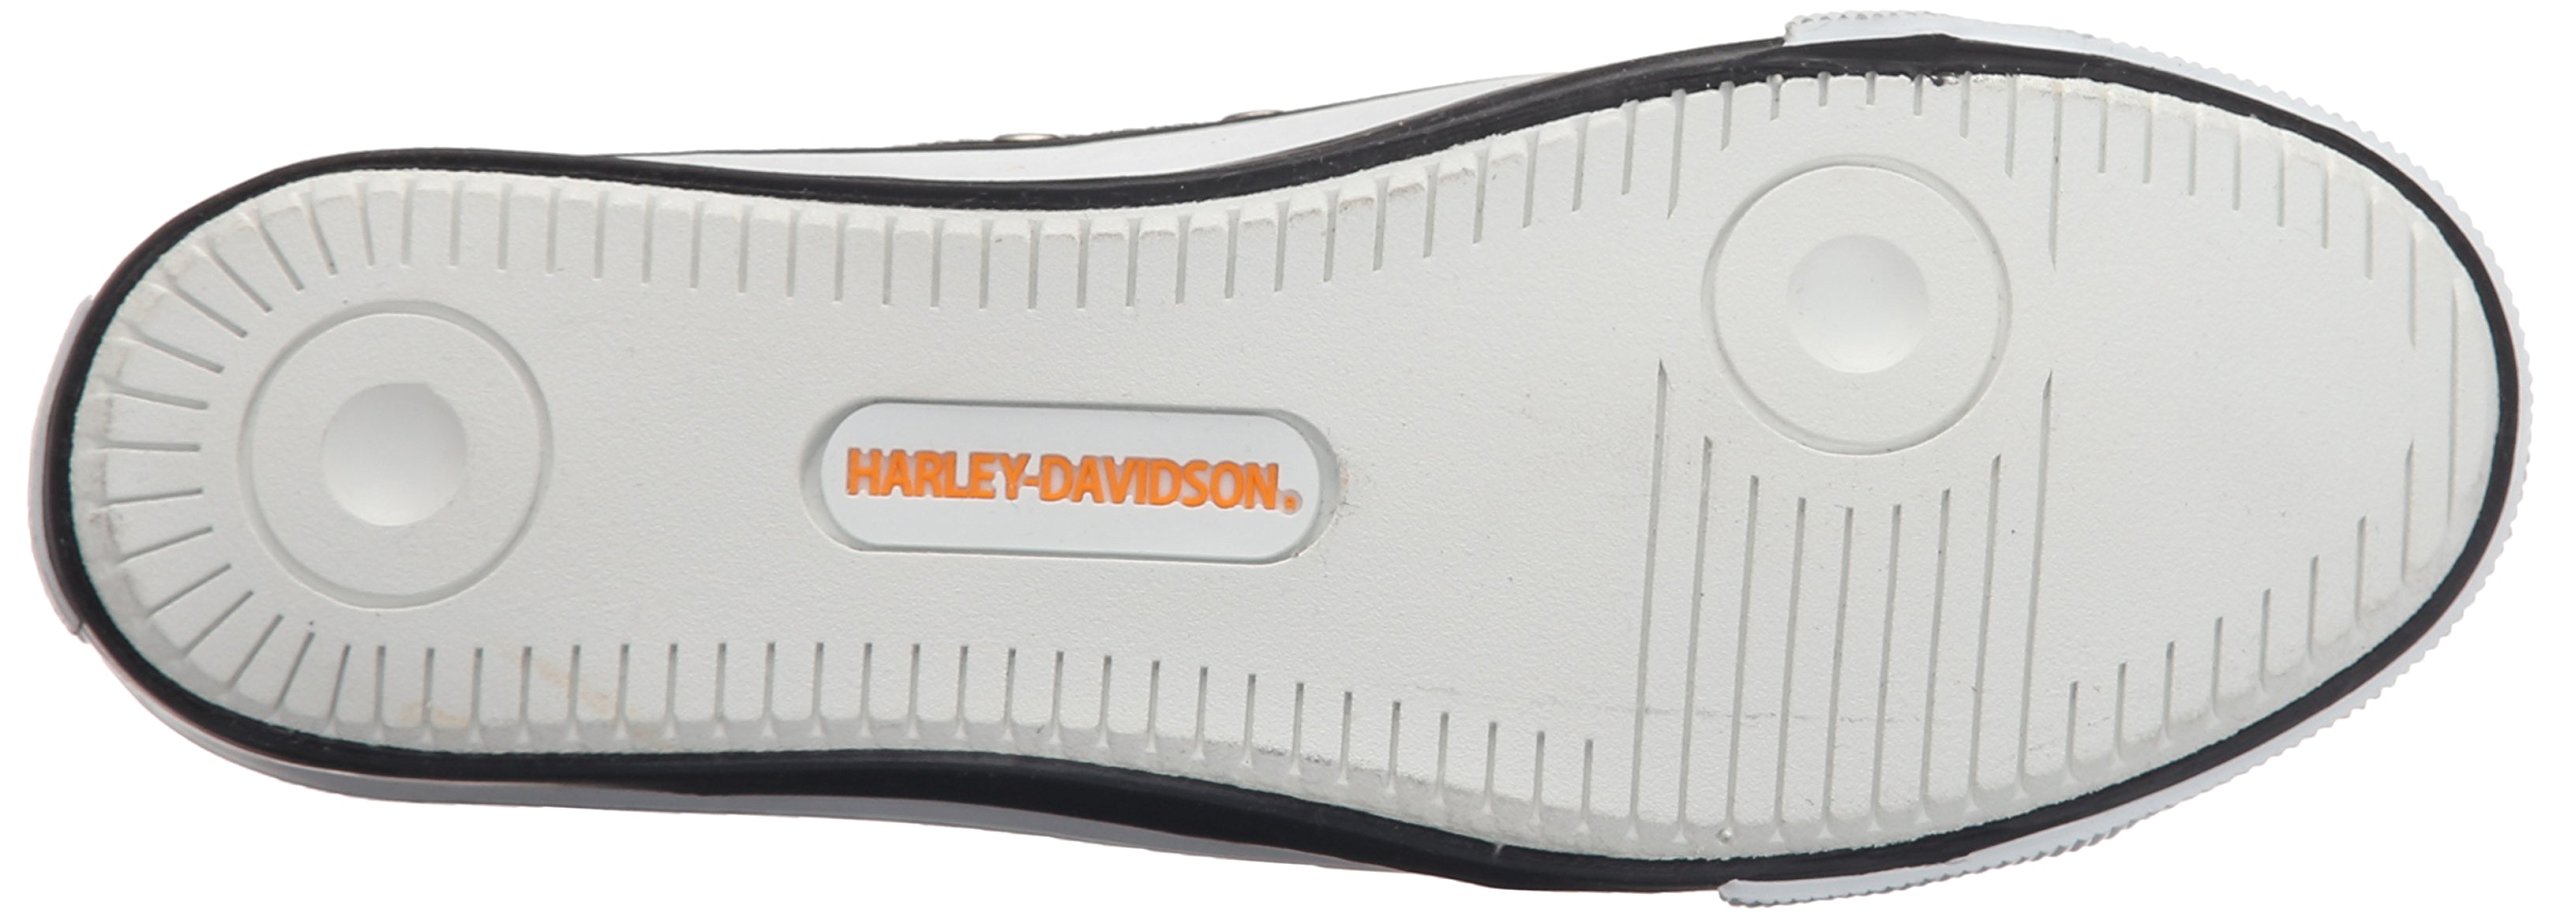 HARLEY-DAVIDSON FOOTWEAR Women's Zia Vulcanized Shoe